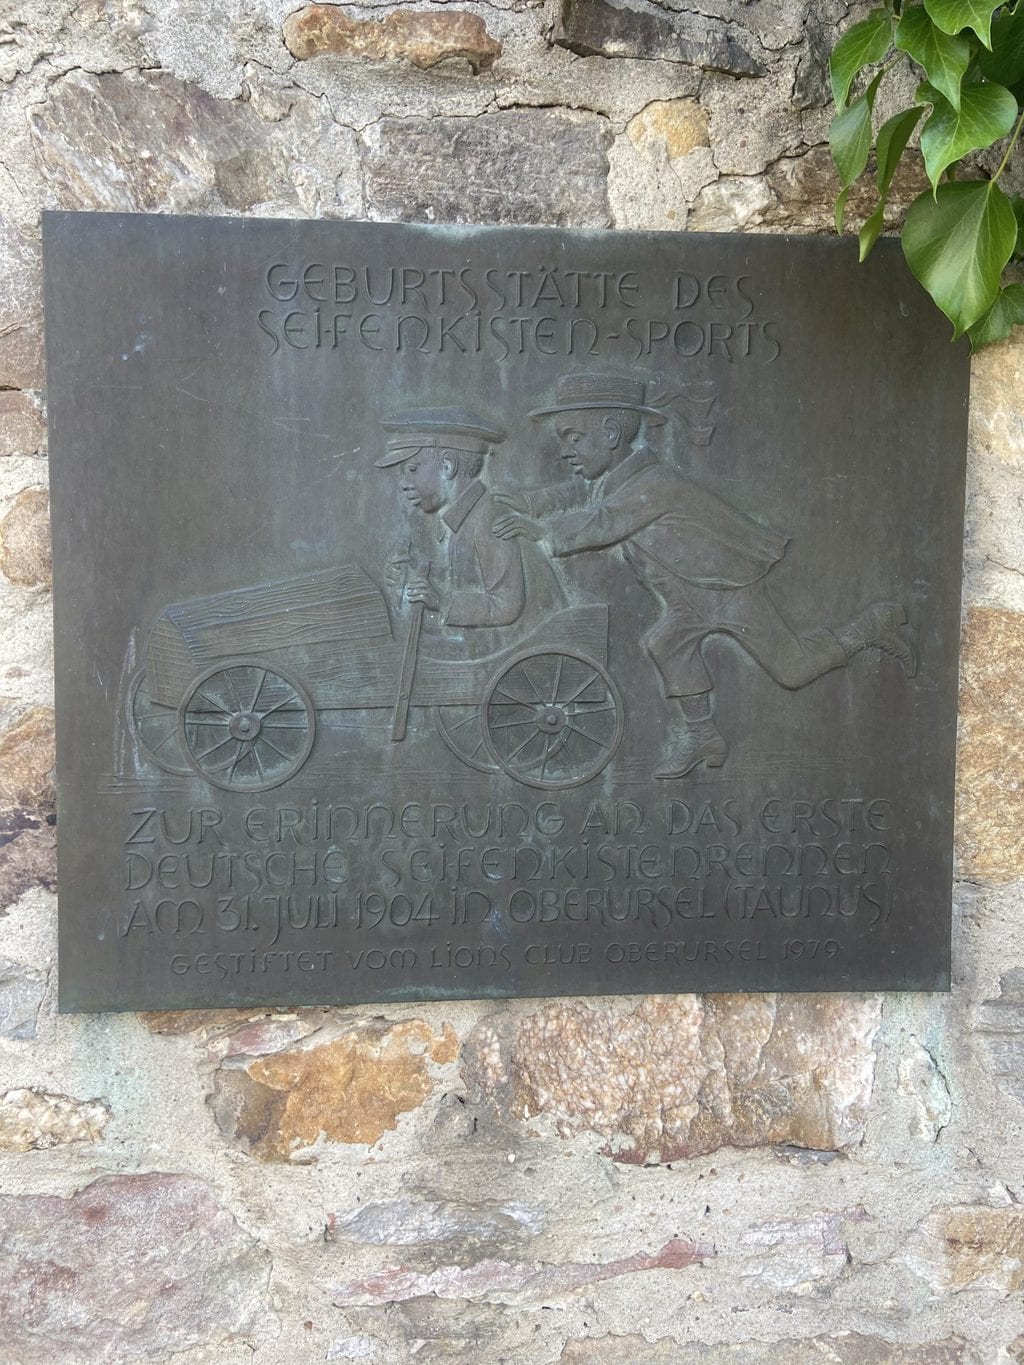 Erinnerungstafel ter ere van het begin van de zeepkistenrace in Oberursel